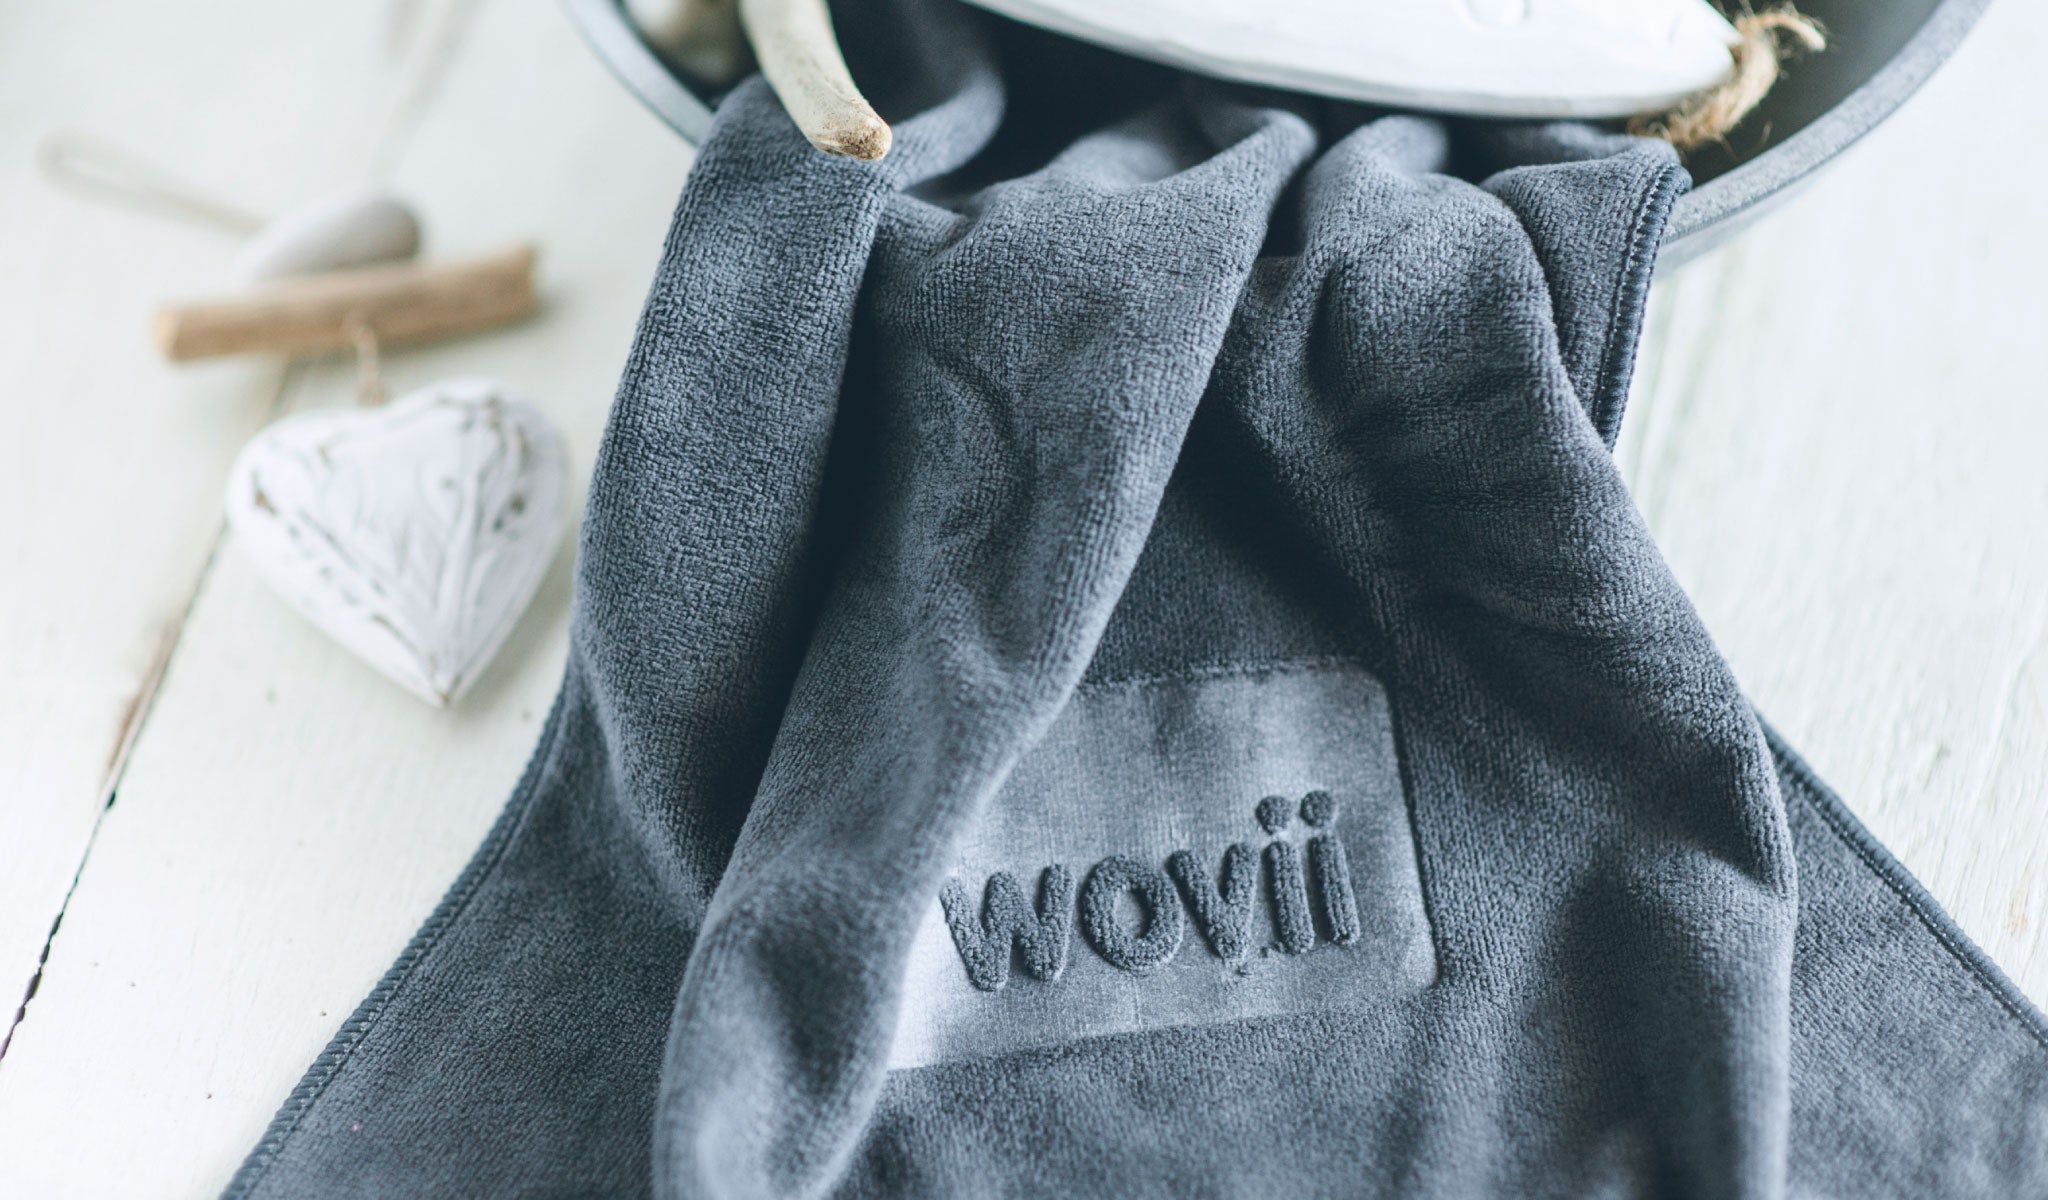 At Home with wovii - Wovii